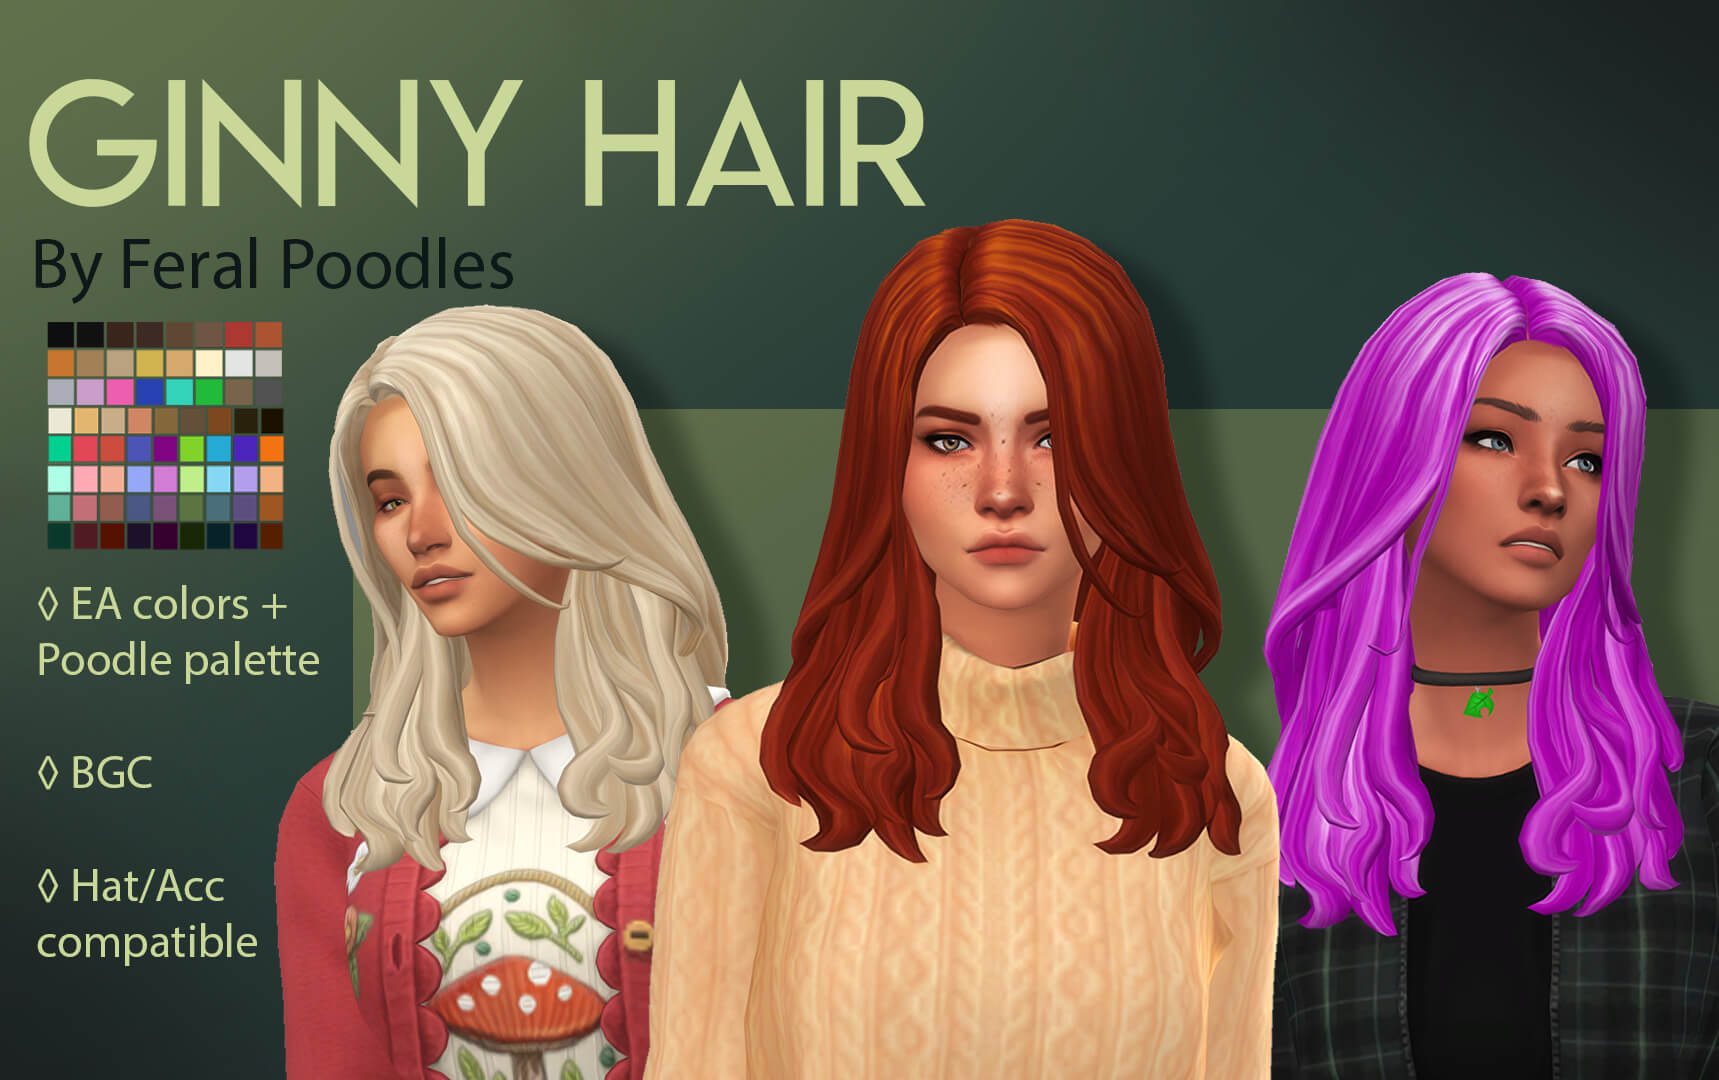 10. Sims 2 Hair Tutorial: How to Create Flashing Blue Hair - wide 1